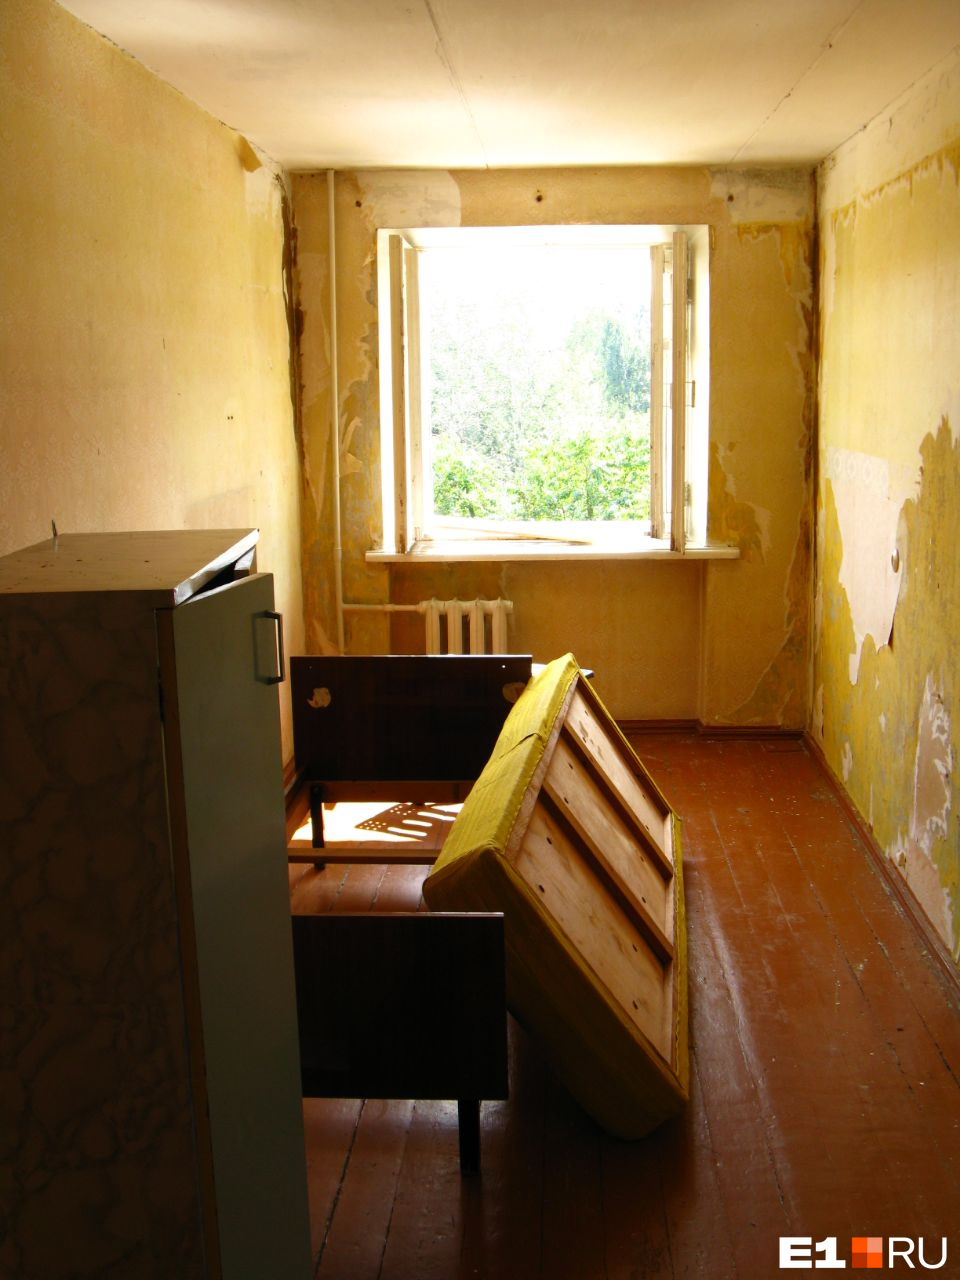 Во всех комнатах купленной квартиры со стен отваливались обои и штукатурка